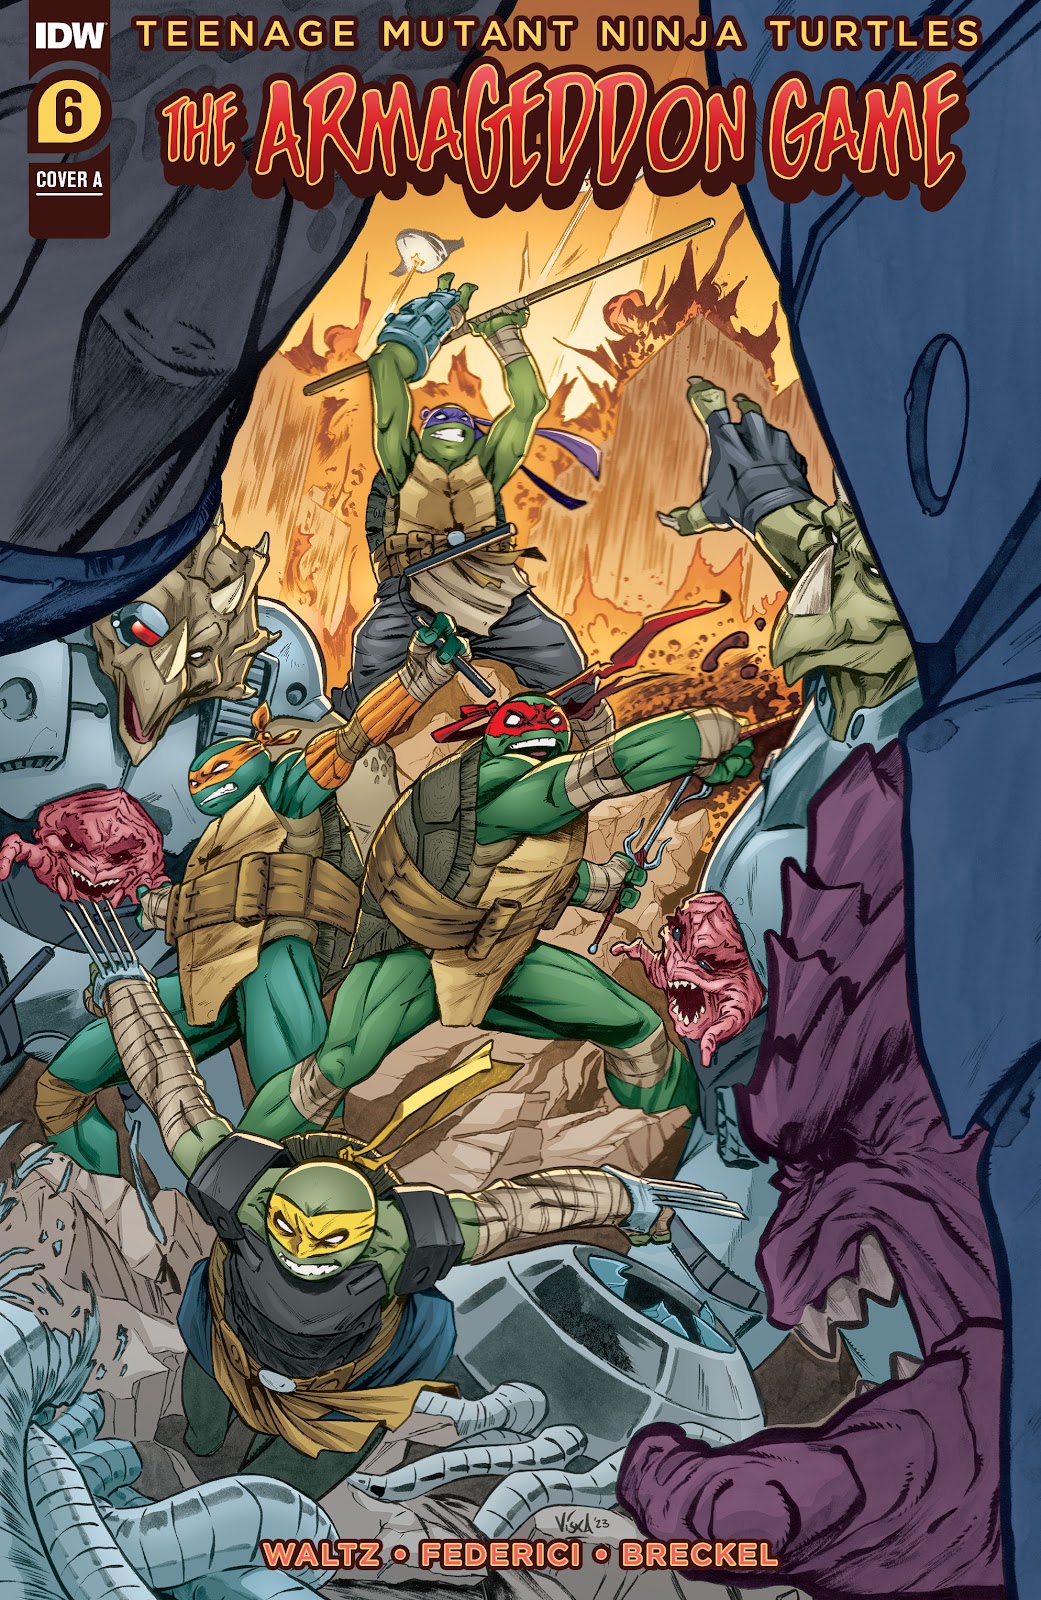 Teenage Mutant Ninja Turtles: The Armageddon Game issue 6 - Page 1